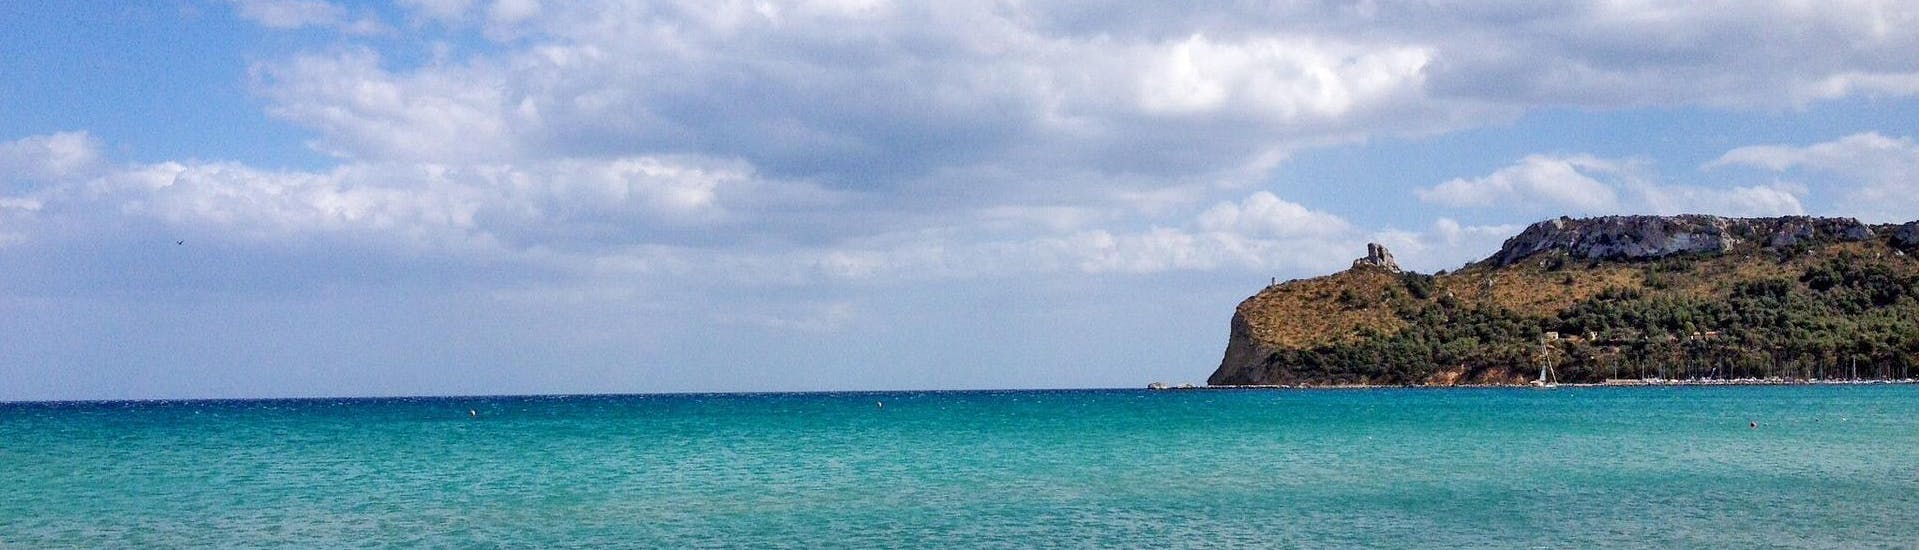 Ein Boot in der Nähe der Küste von Cagliari auf Sardinien.